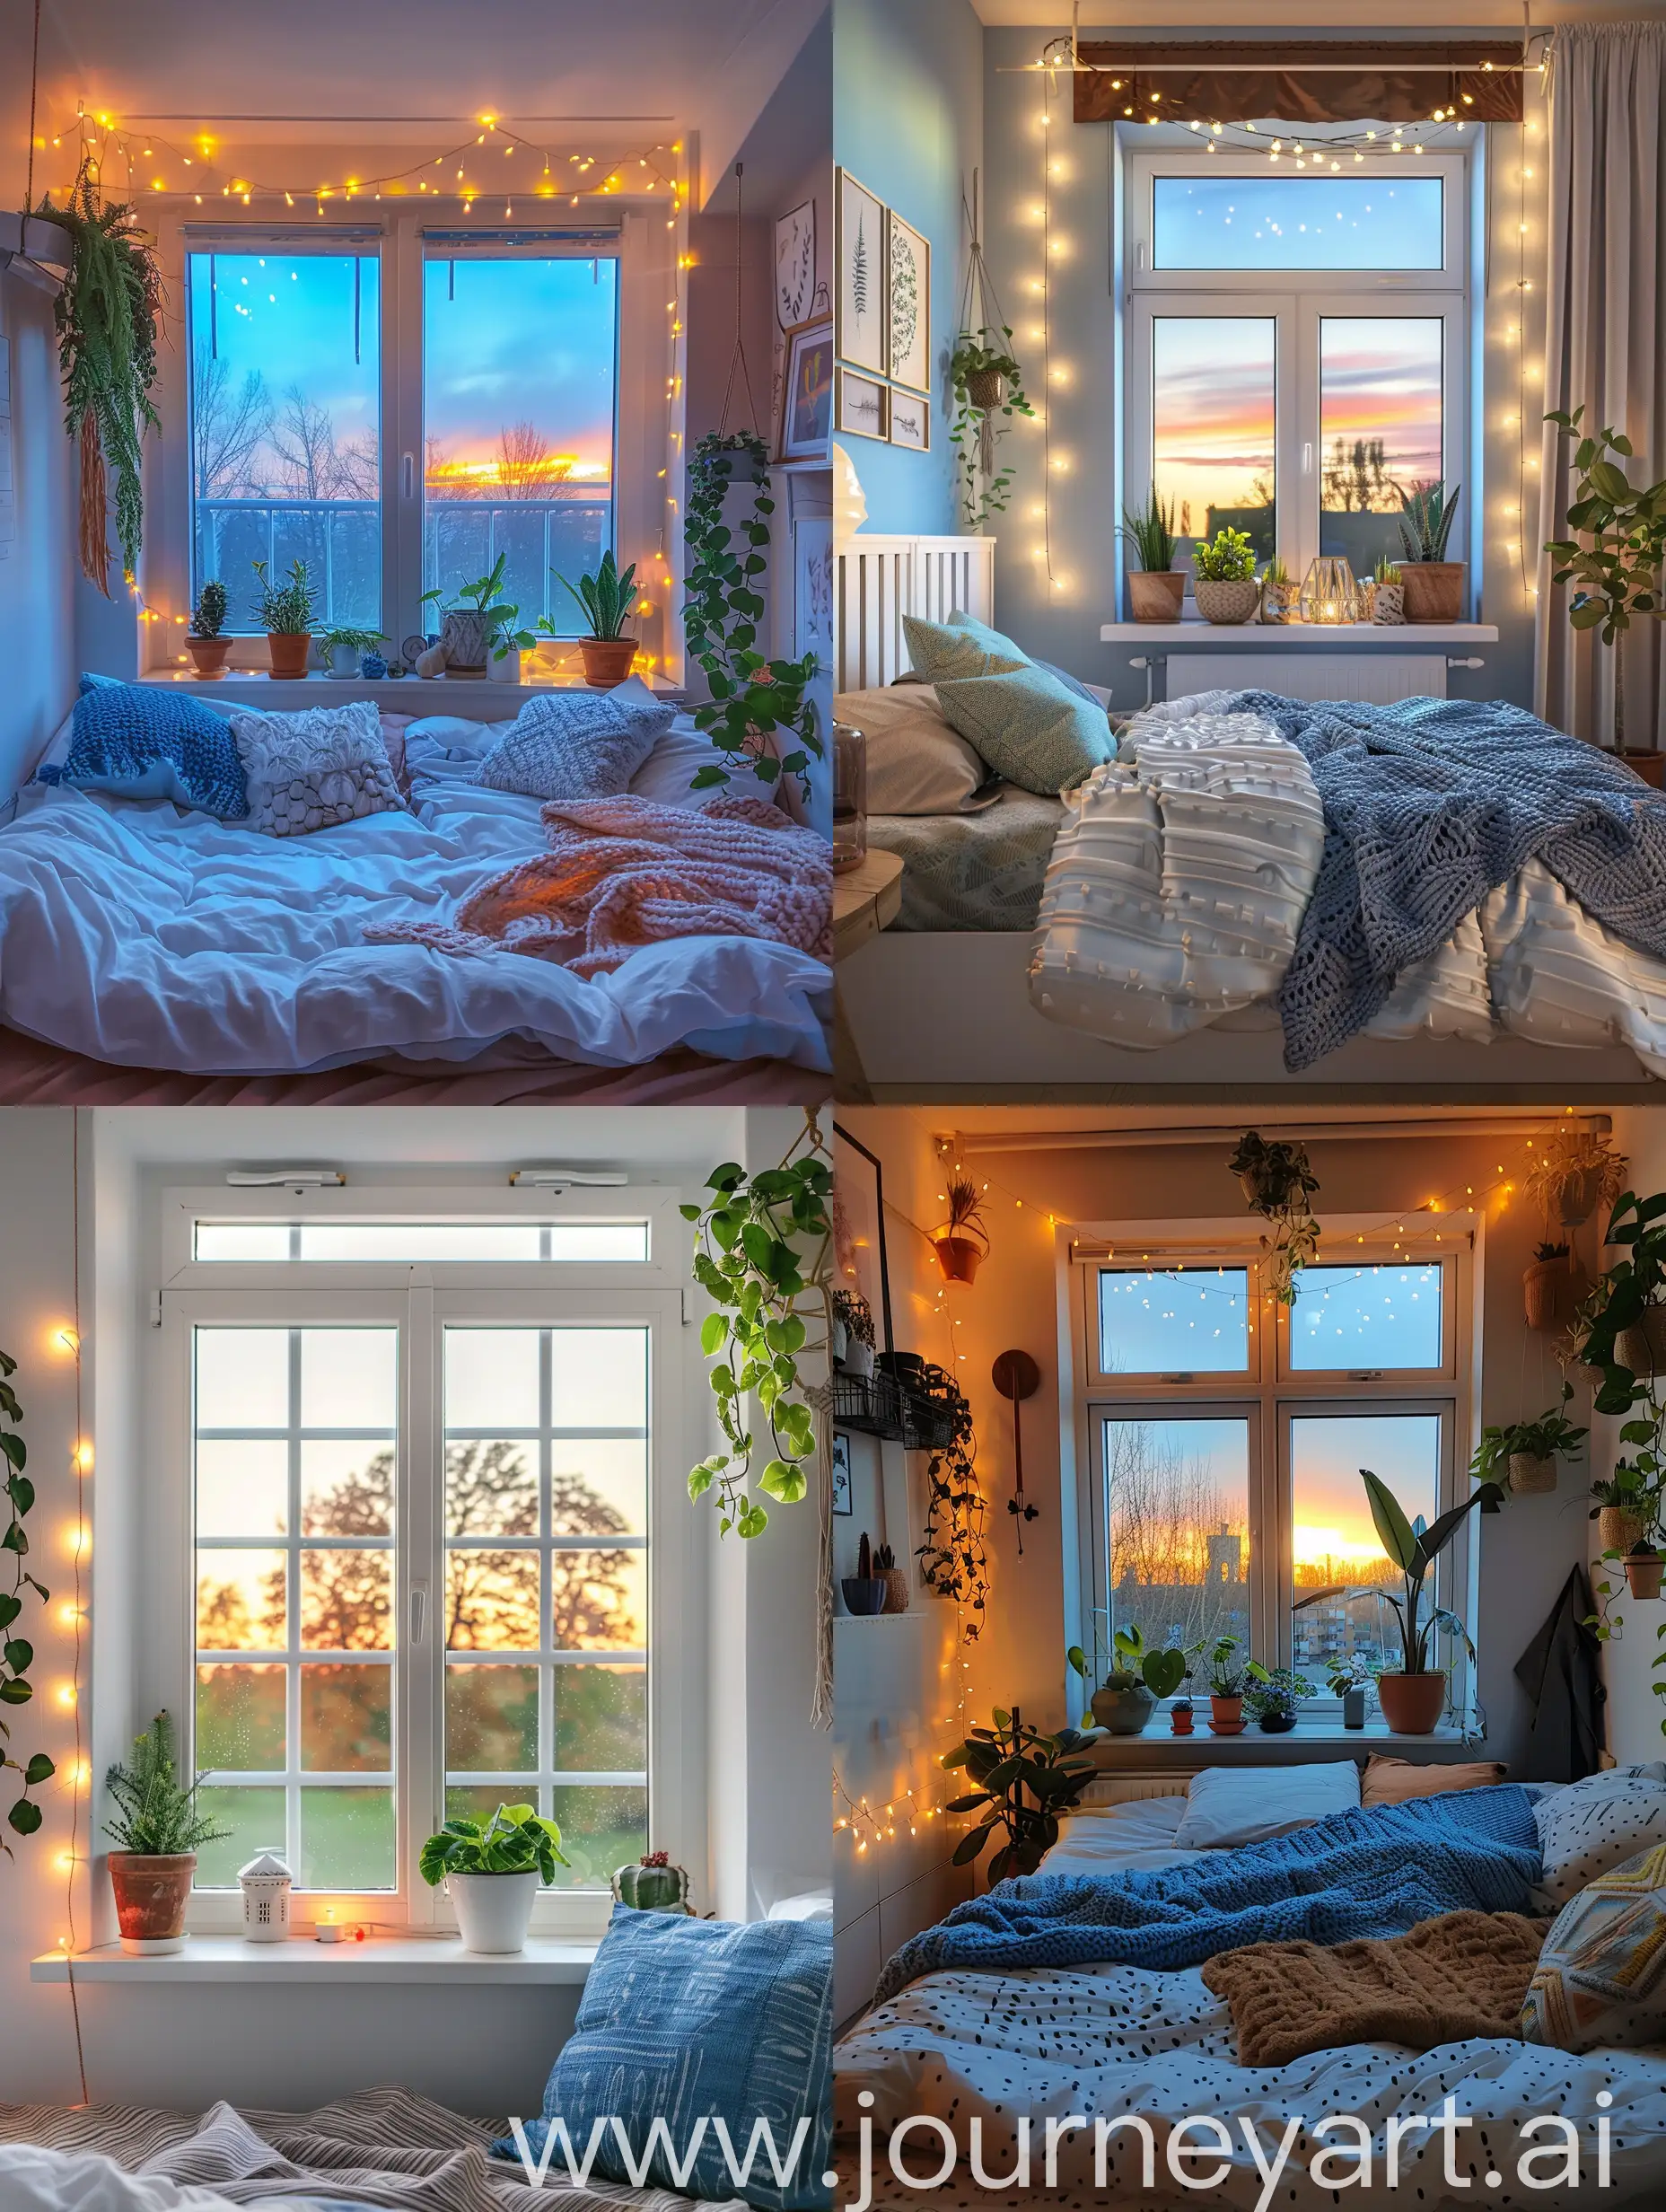 Camera da letto stile scandinavo con finestra. Colori bianco Blu e marrone. Piante e decorazioni. Luci del tramonto